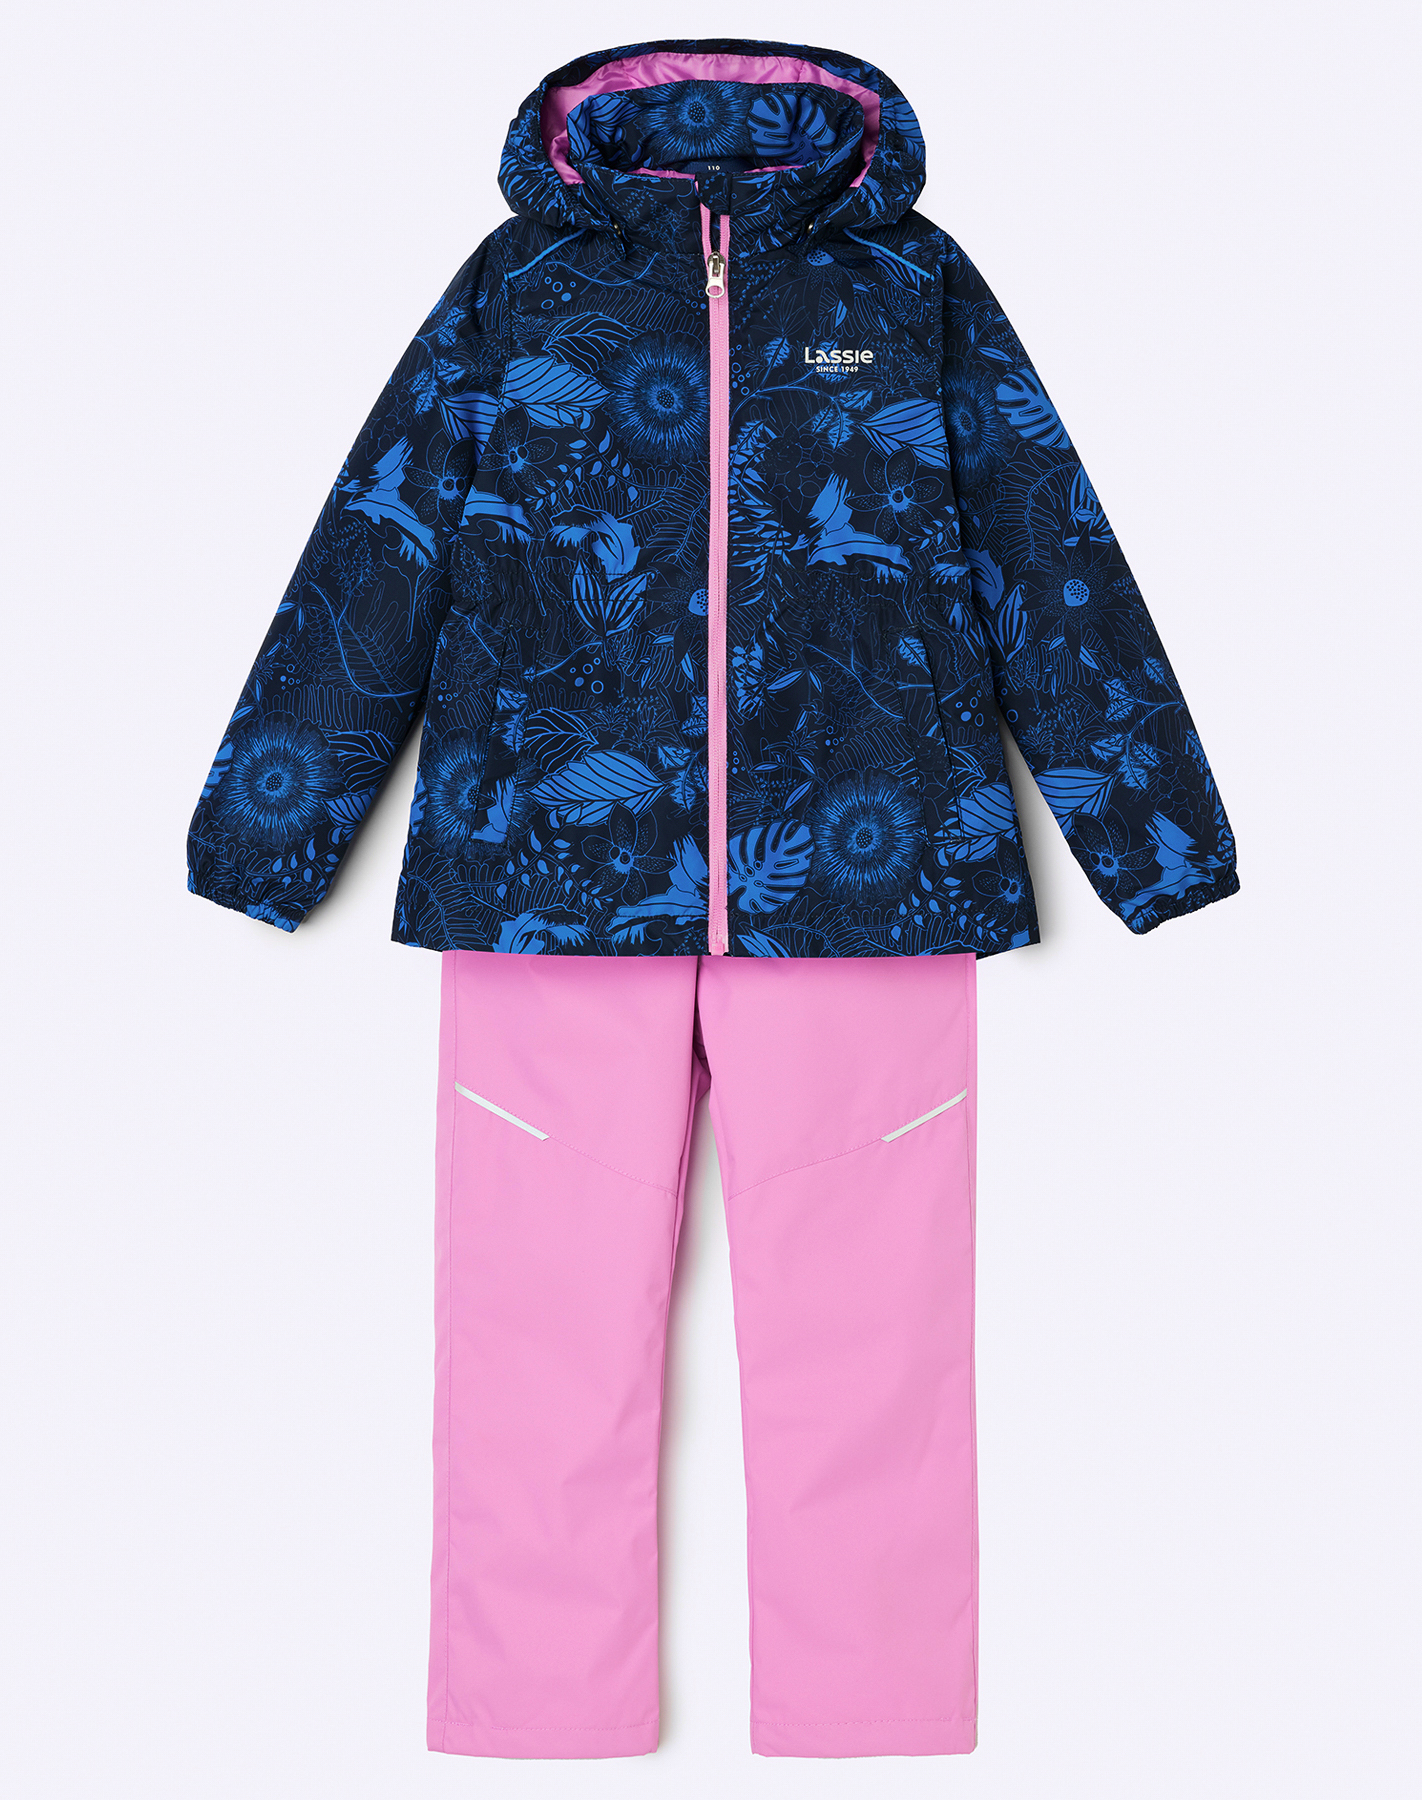 Комплект верхней одежды детский Lassie Manna 7100042A, с рисунком  розовый, 110